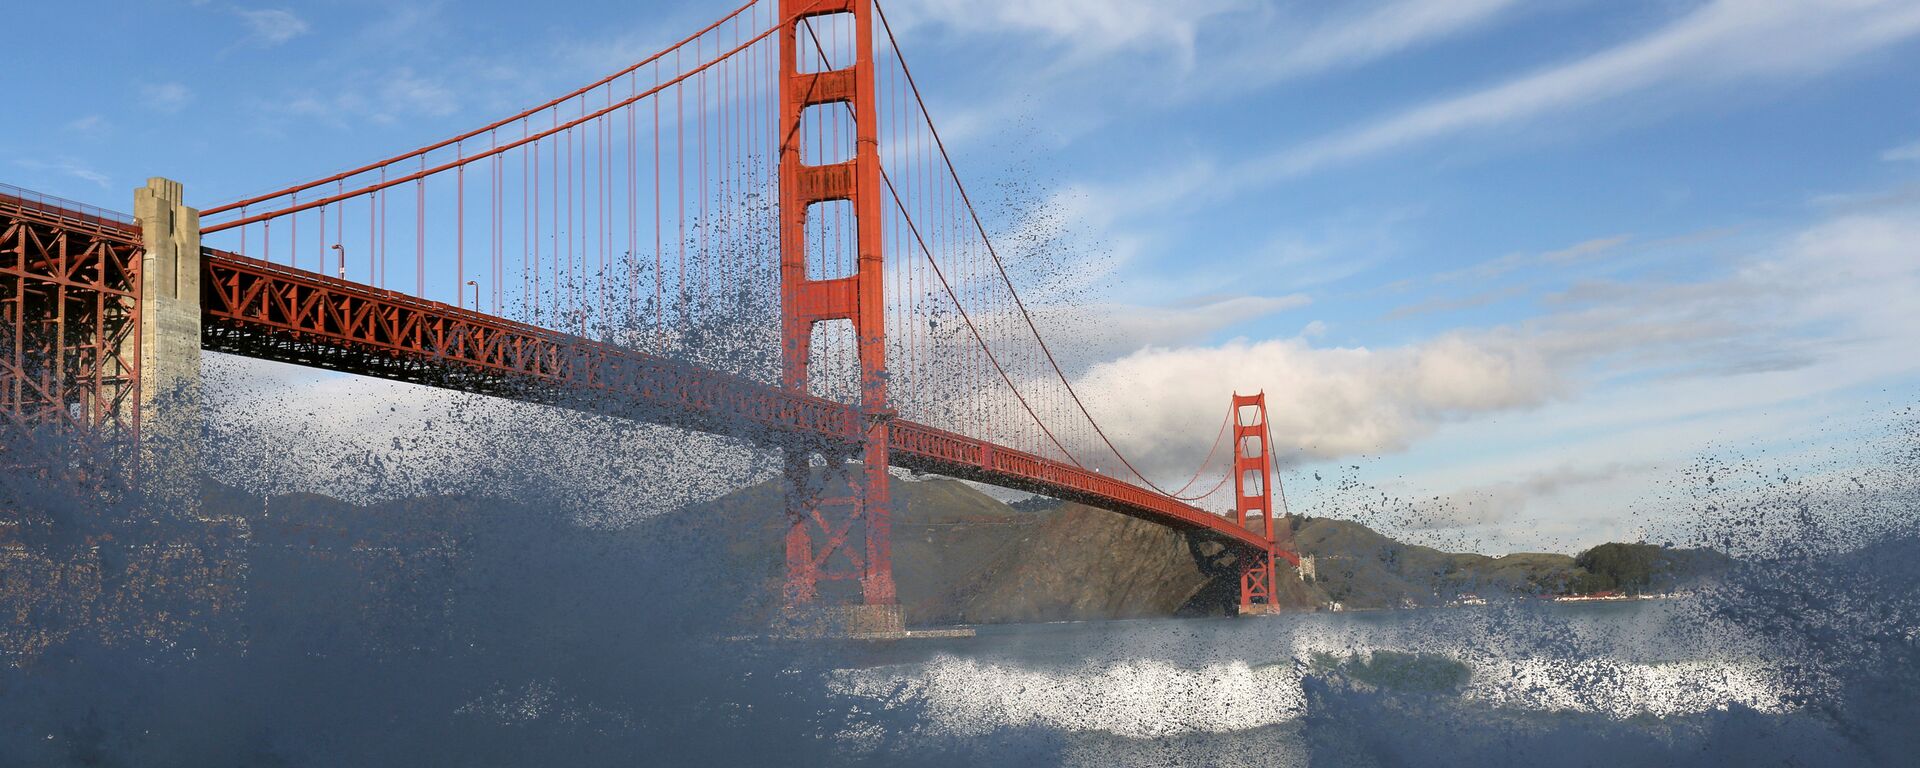 San Francisco, Golden Gate Köprüsü - Sputnik Türkiye, 1920, 25.04.2018